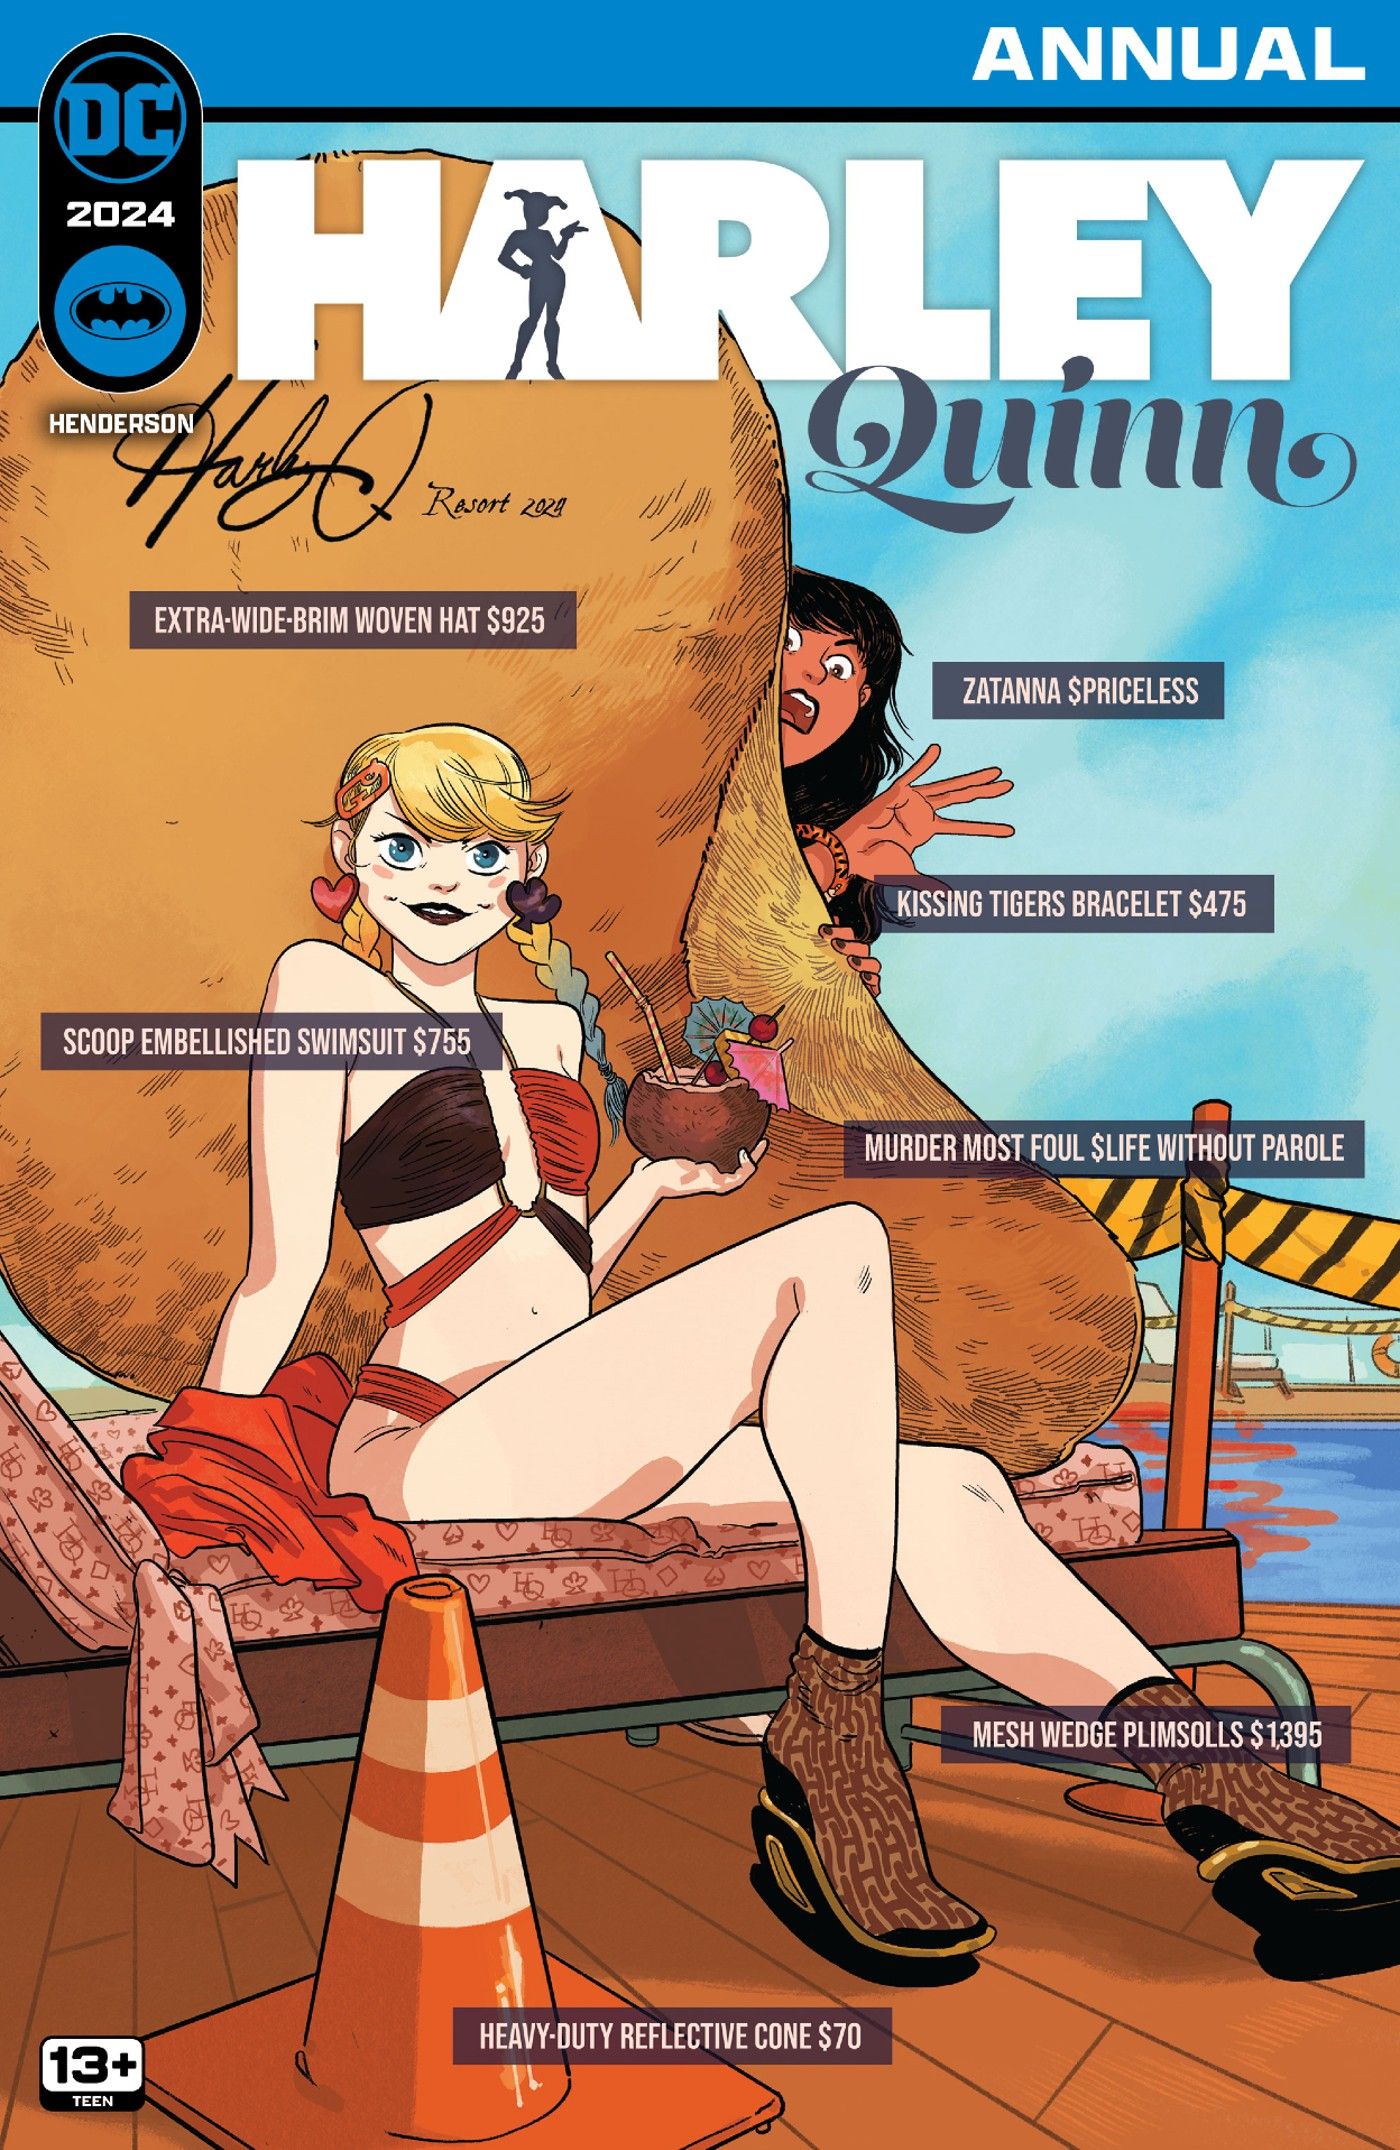 Harley Quinn em traje de banho com Zatanna espiando pela ponta do chapéu da Harley com etiquetas de preços em diversos itens de moda